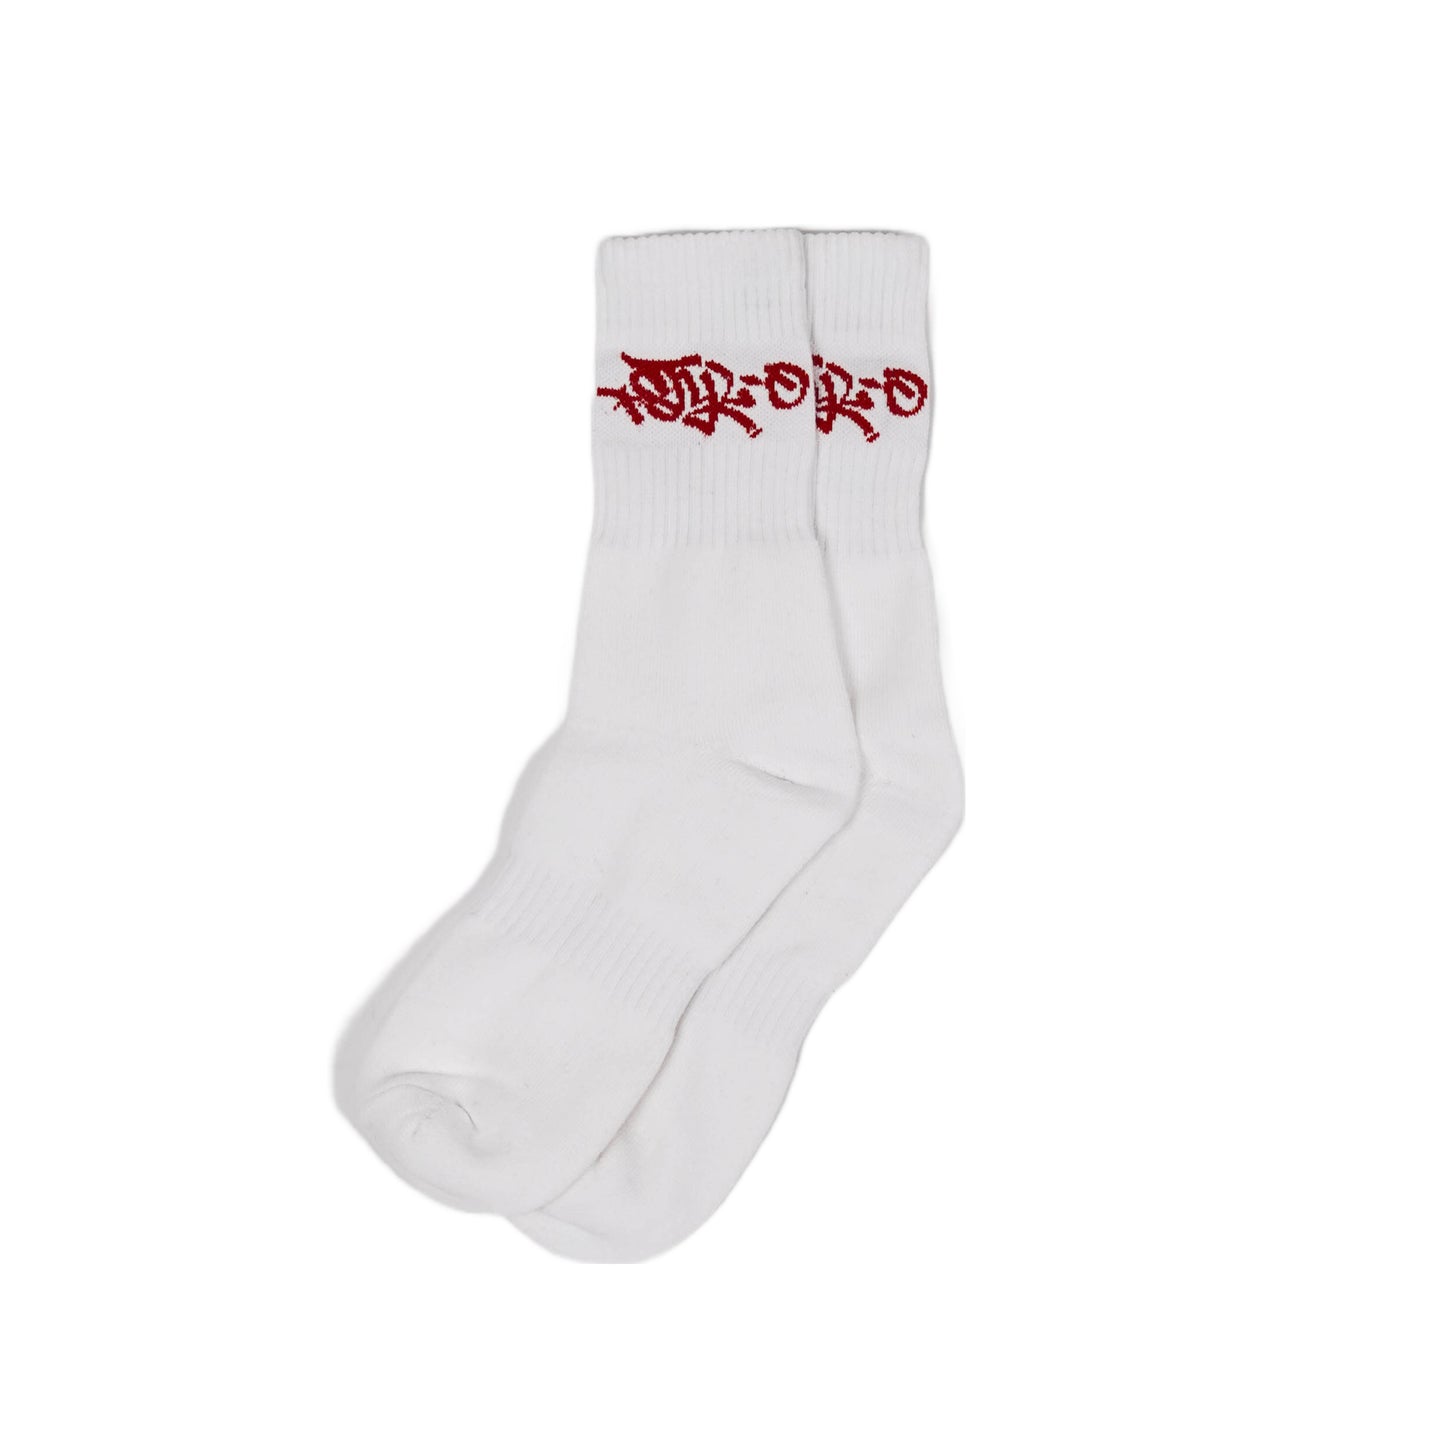 Crew Socks (White/Red)